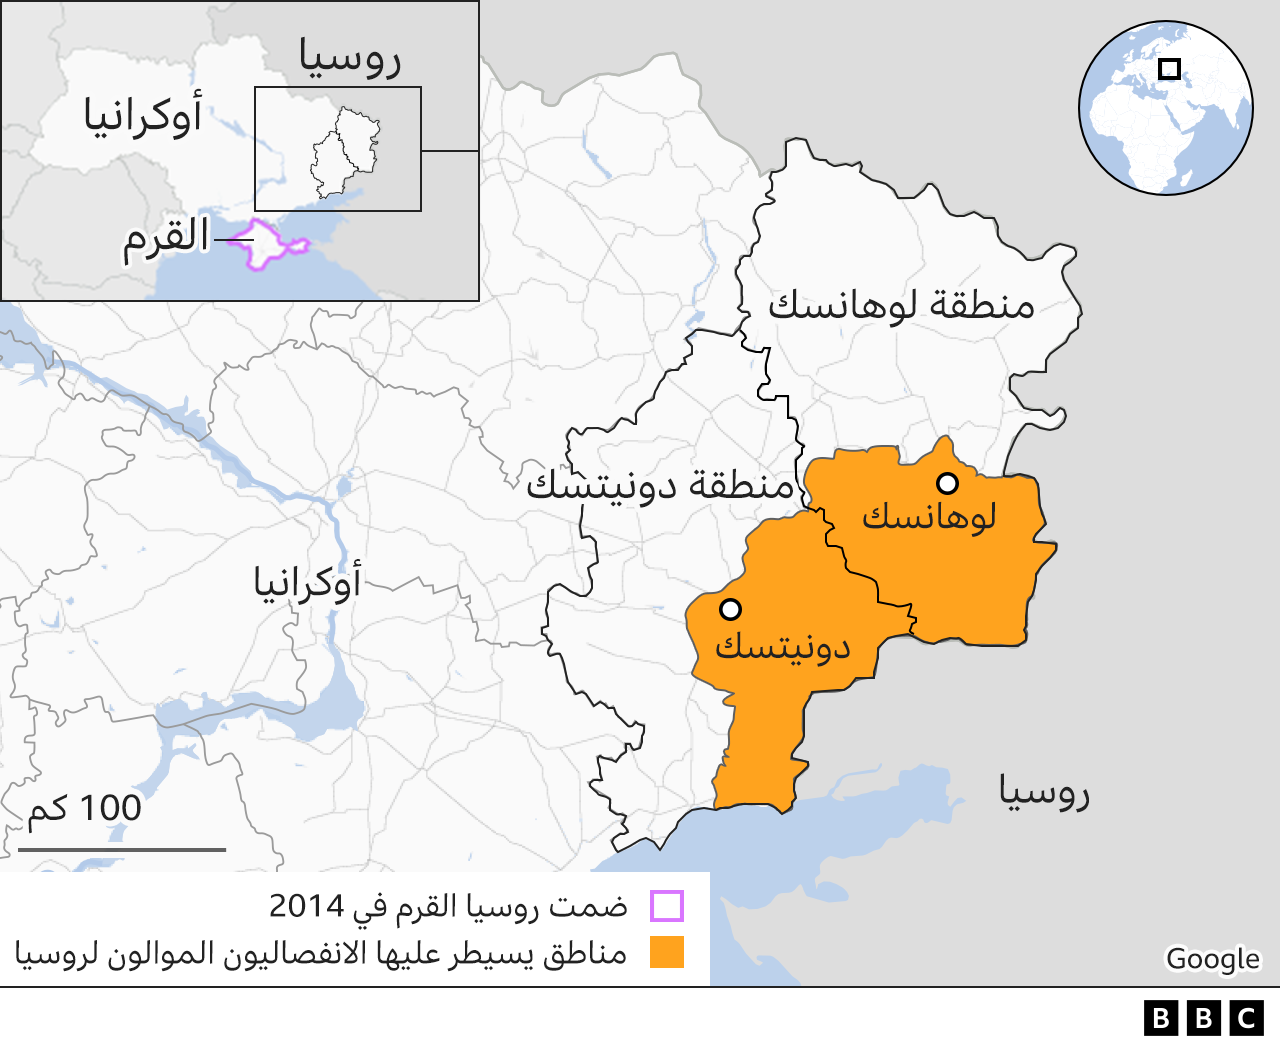 المناطق الخاضعة لسيطرة المتمردين في منطقتي لوهانسك ودونيتسك